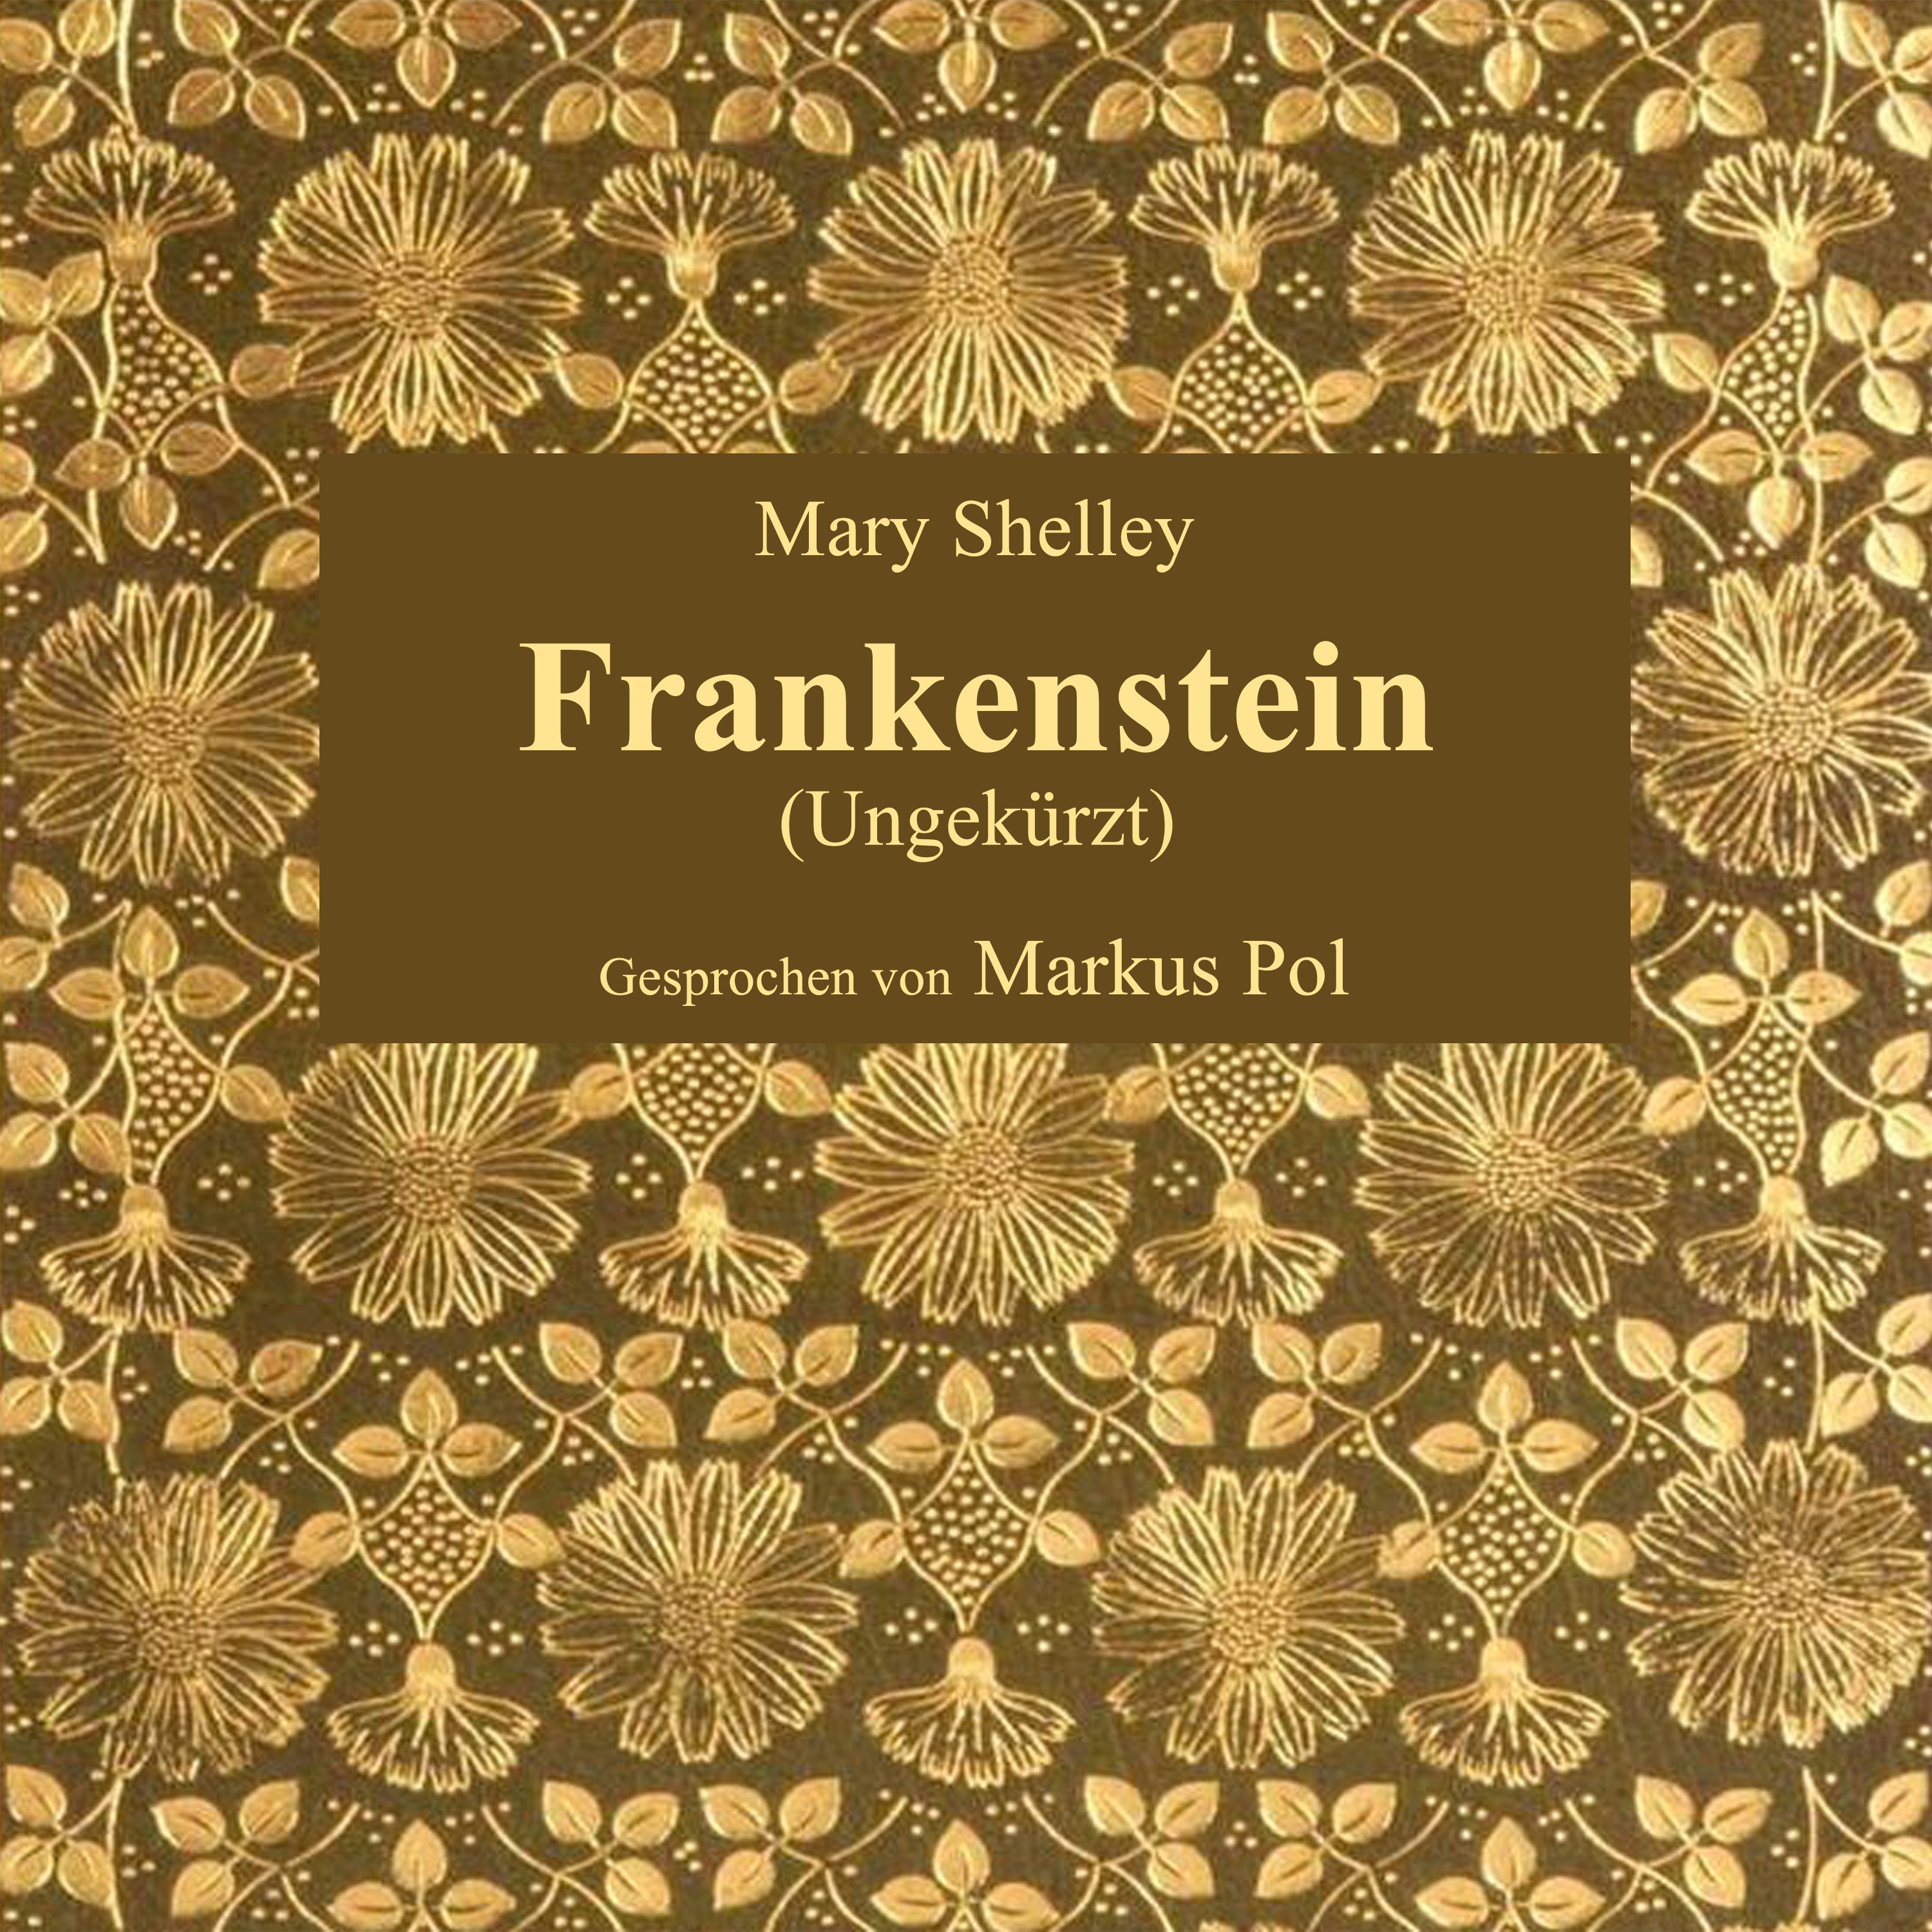 Kapitel 21: Frankenstein (Teil 30)